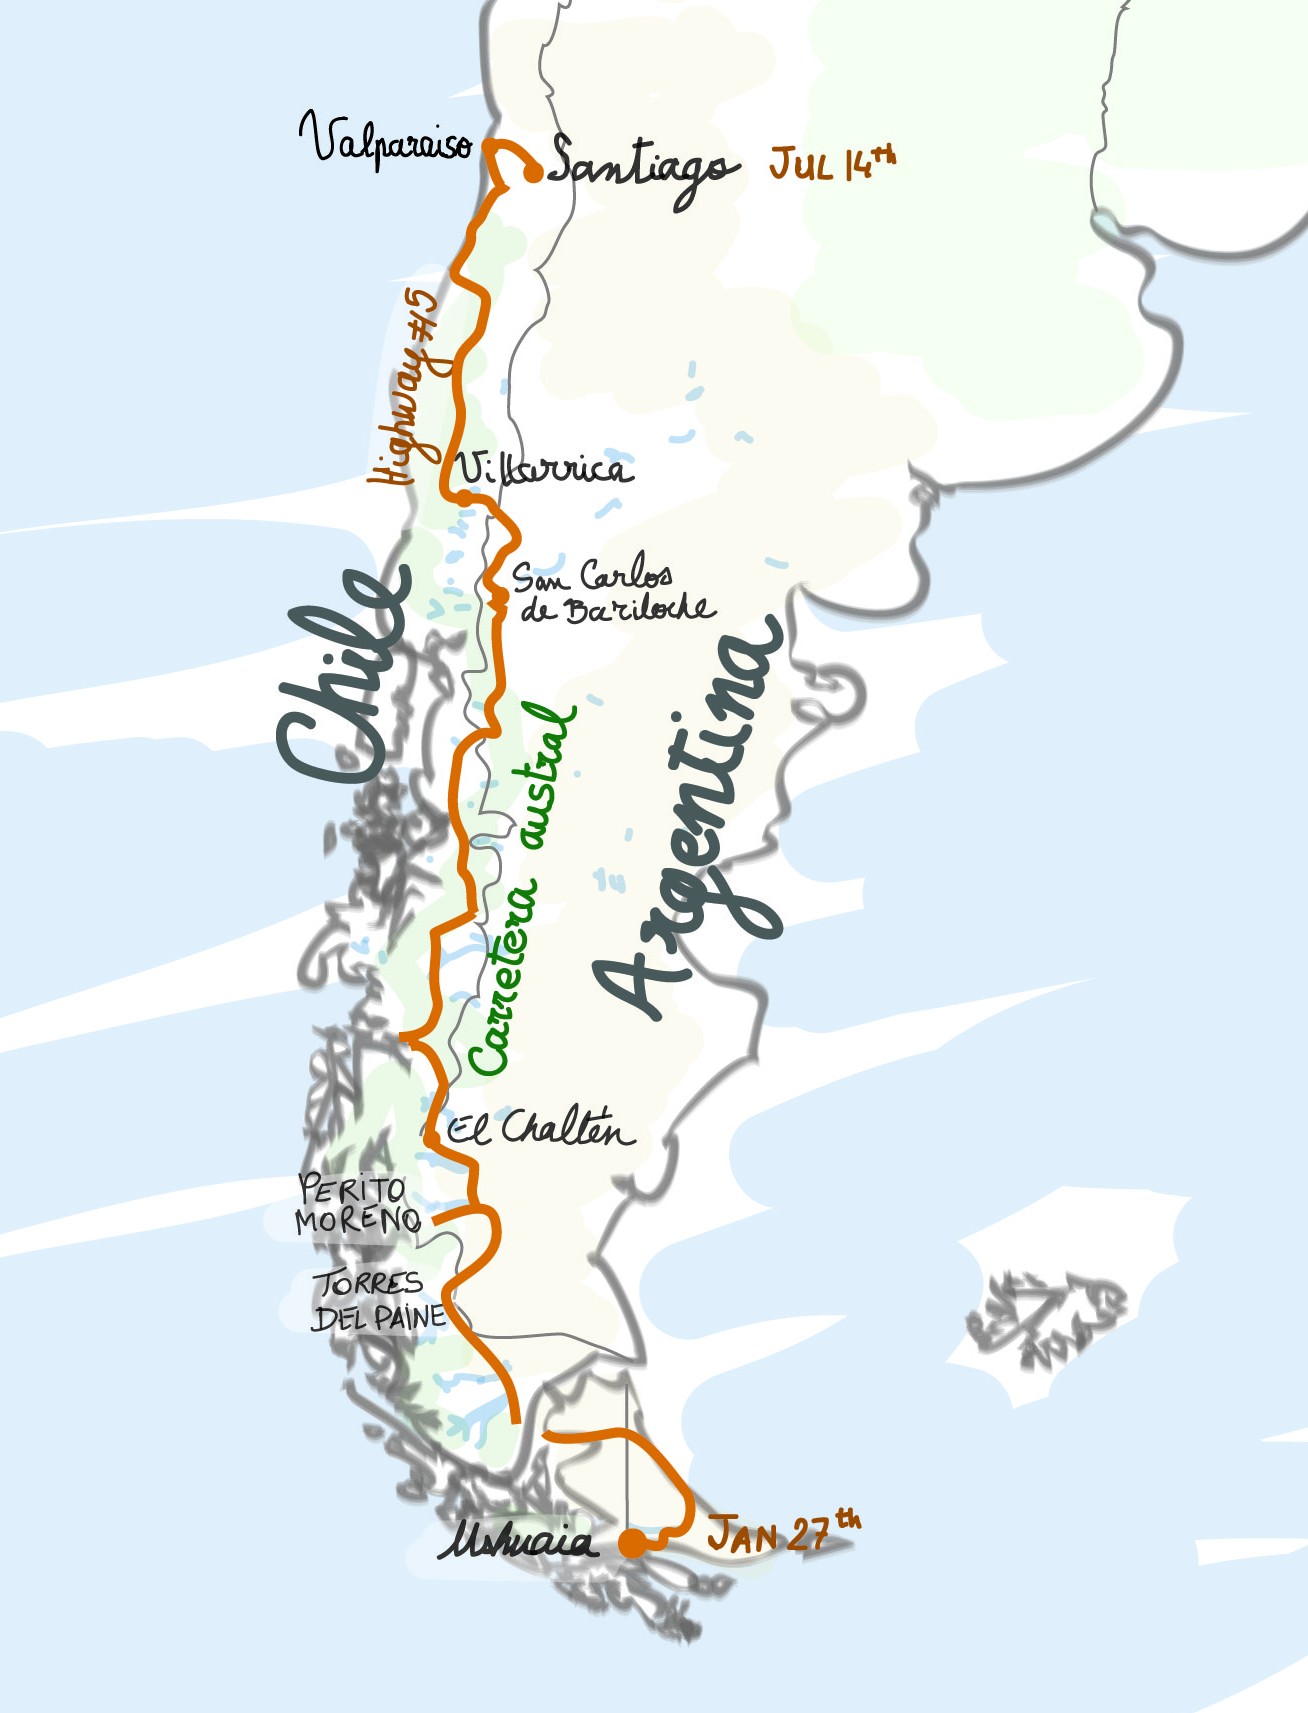 patagonia_map